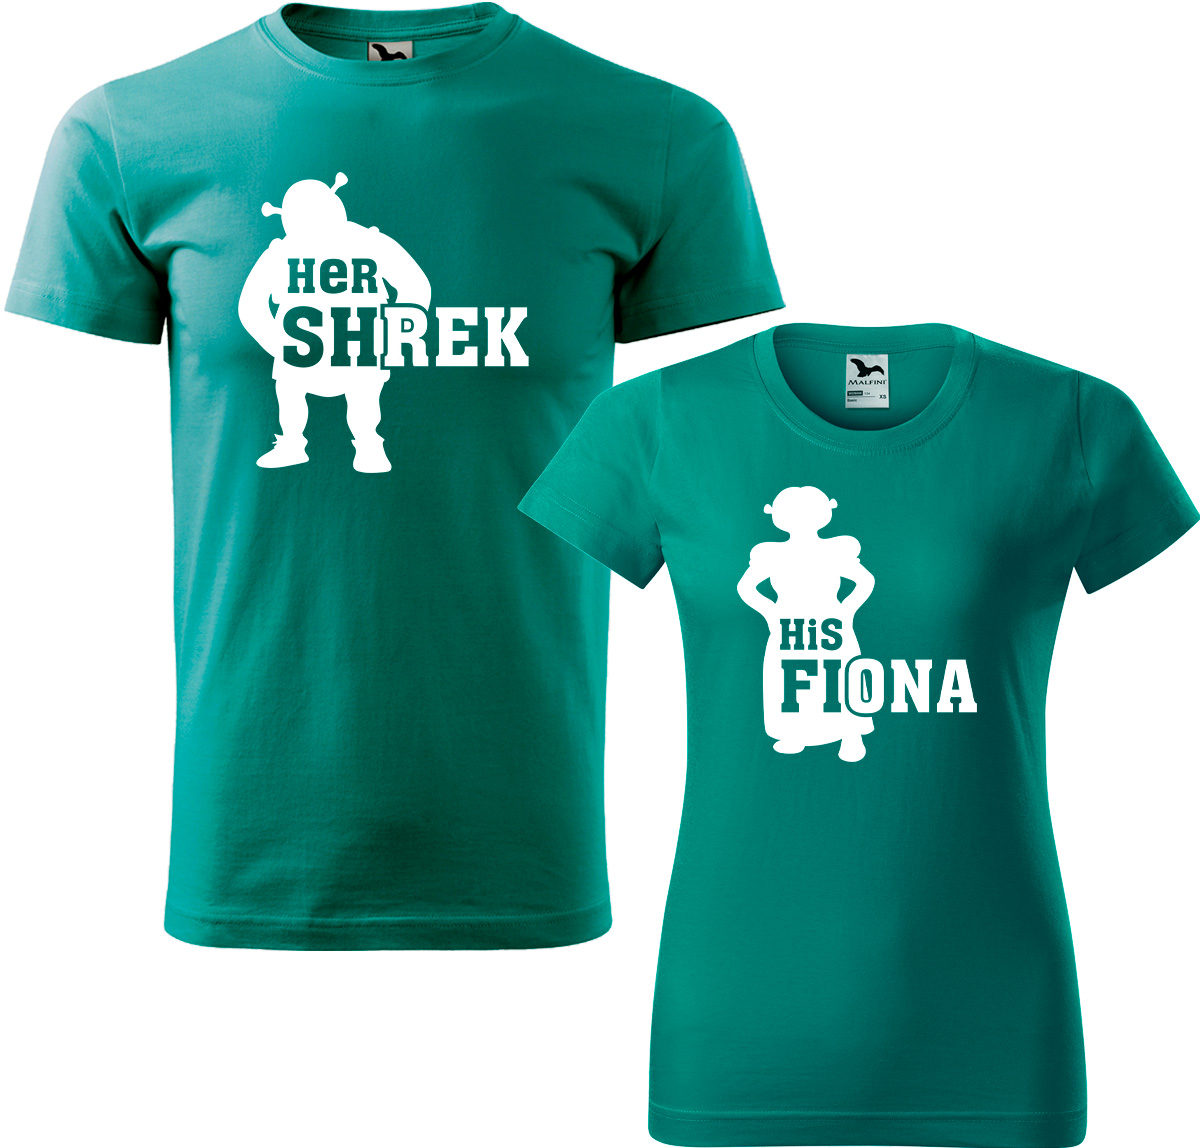 Trička pro páry - Shrek a Fiona Barva: Emerald (19), Velikost dámské tričko: 3XL, Velikost pánské tričko: 4XL